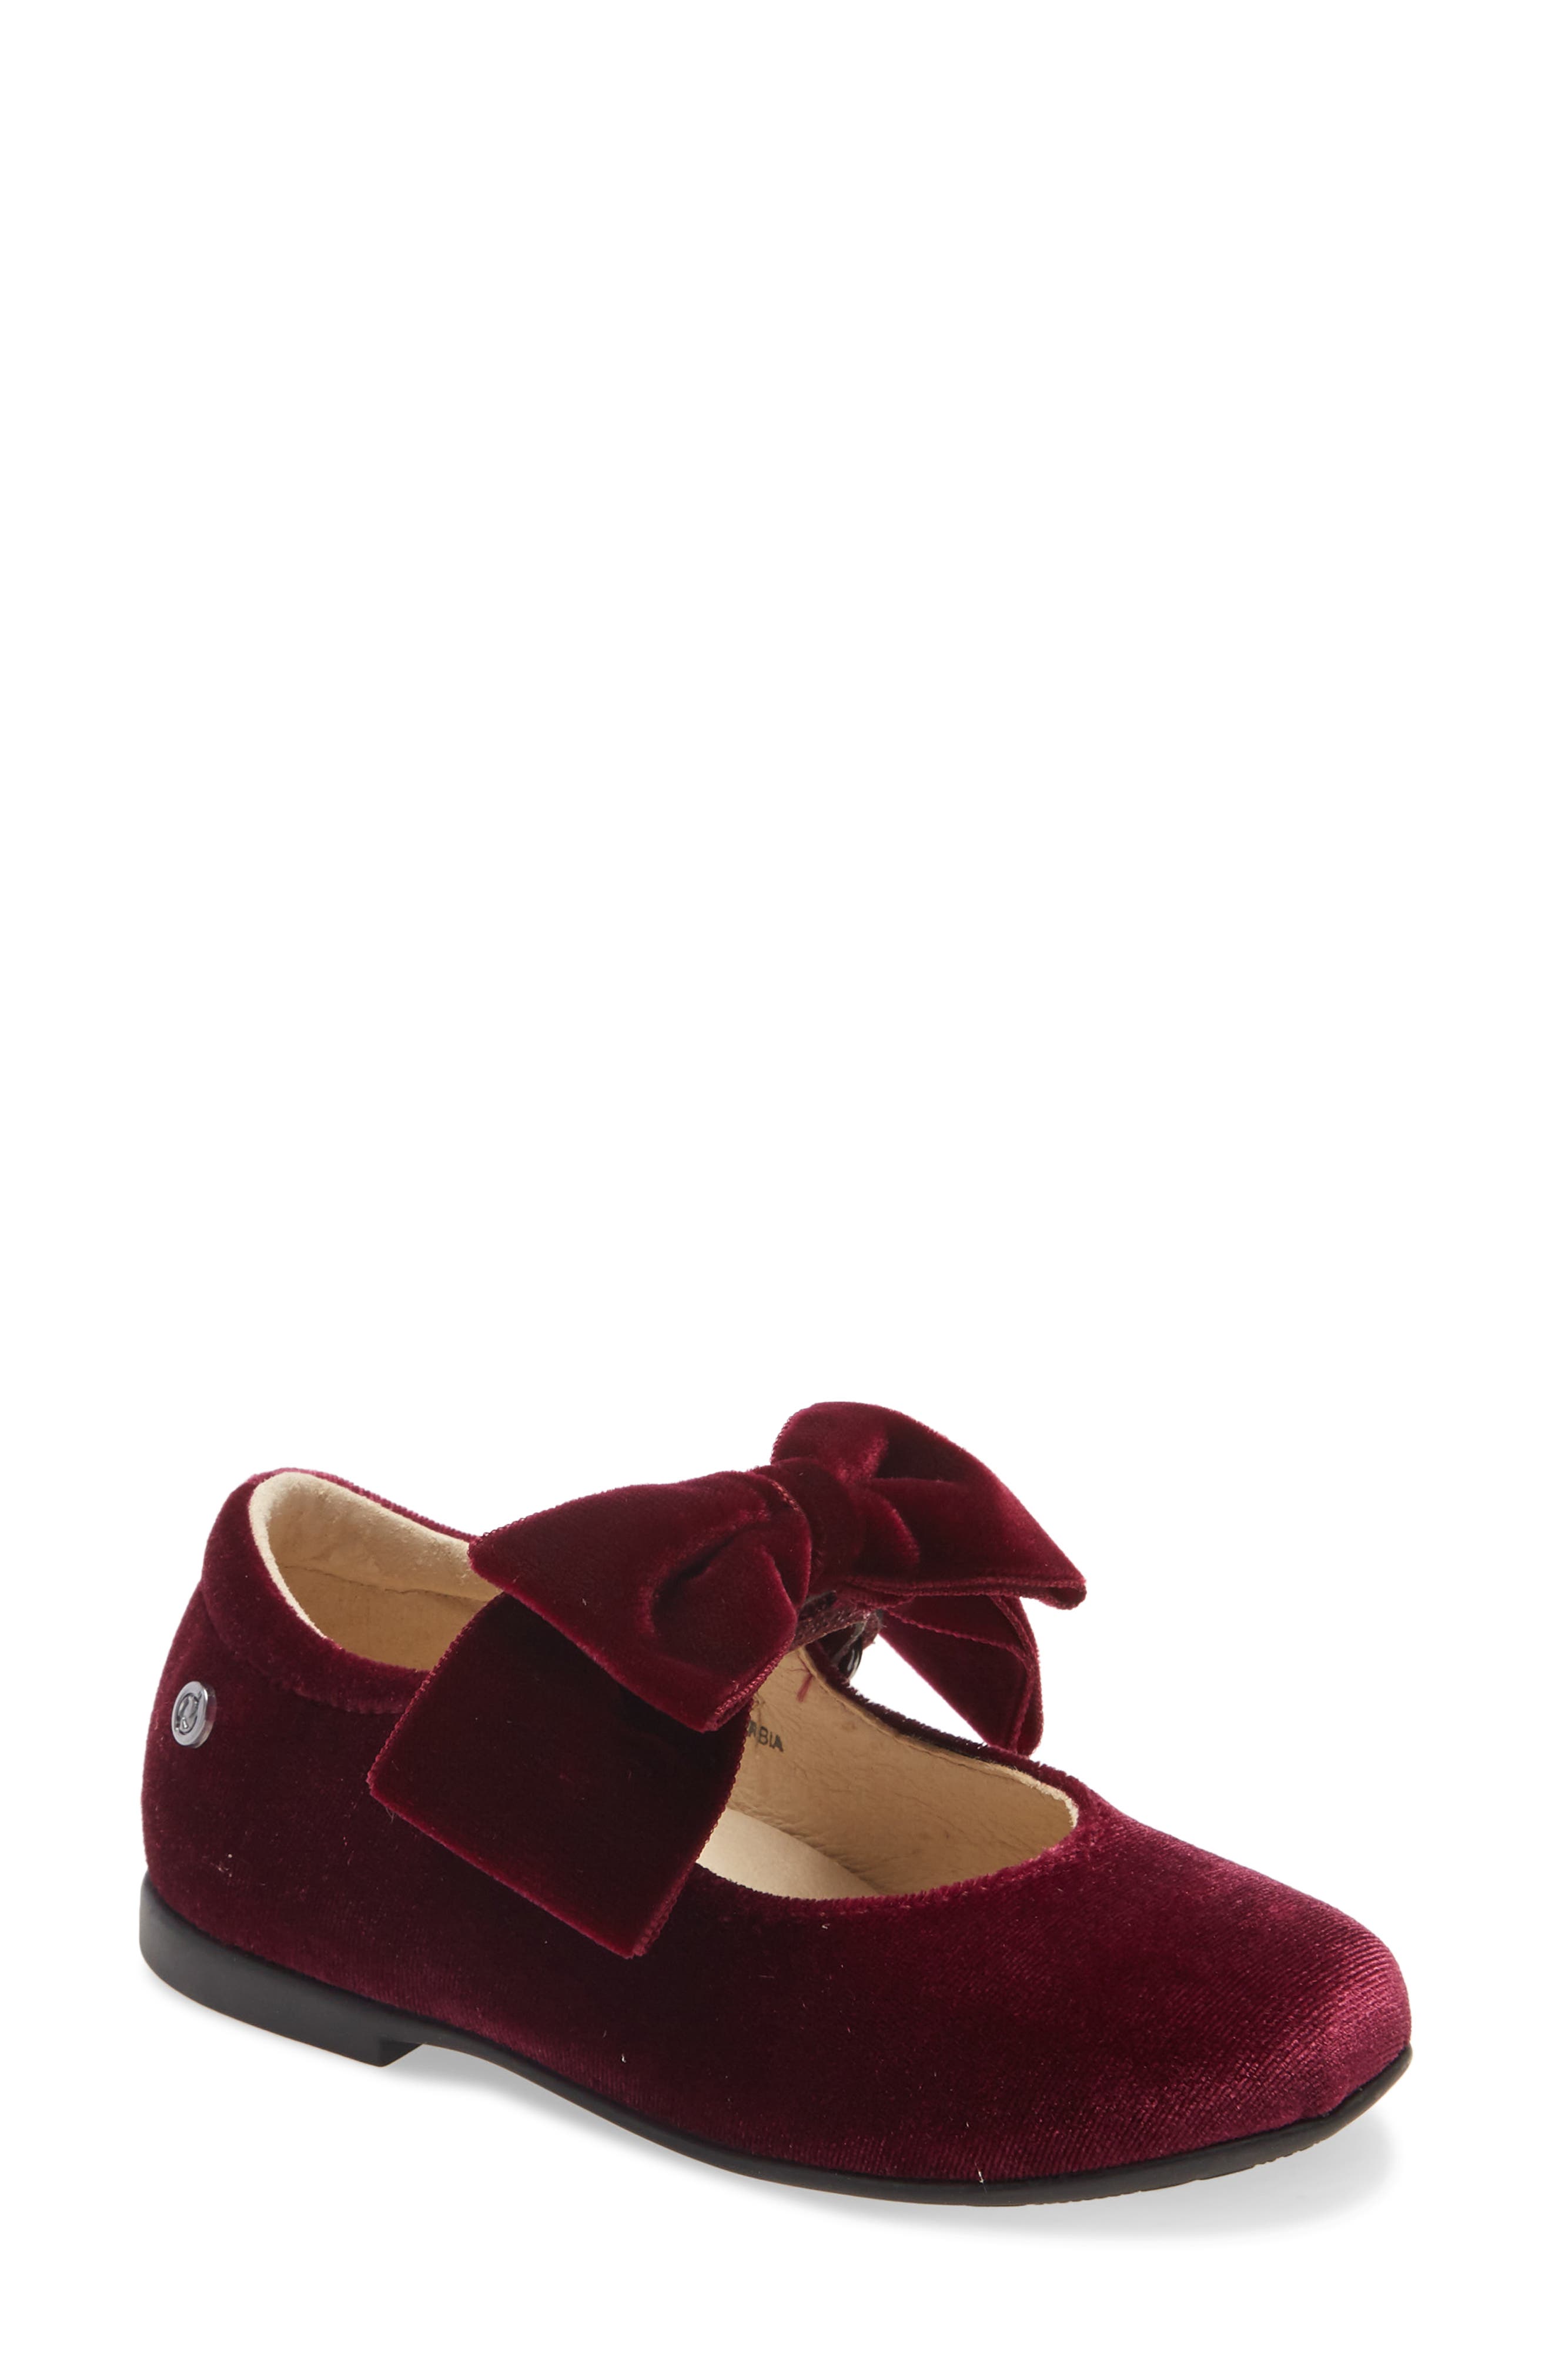 burgundy shoes for little girl